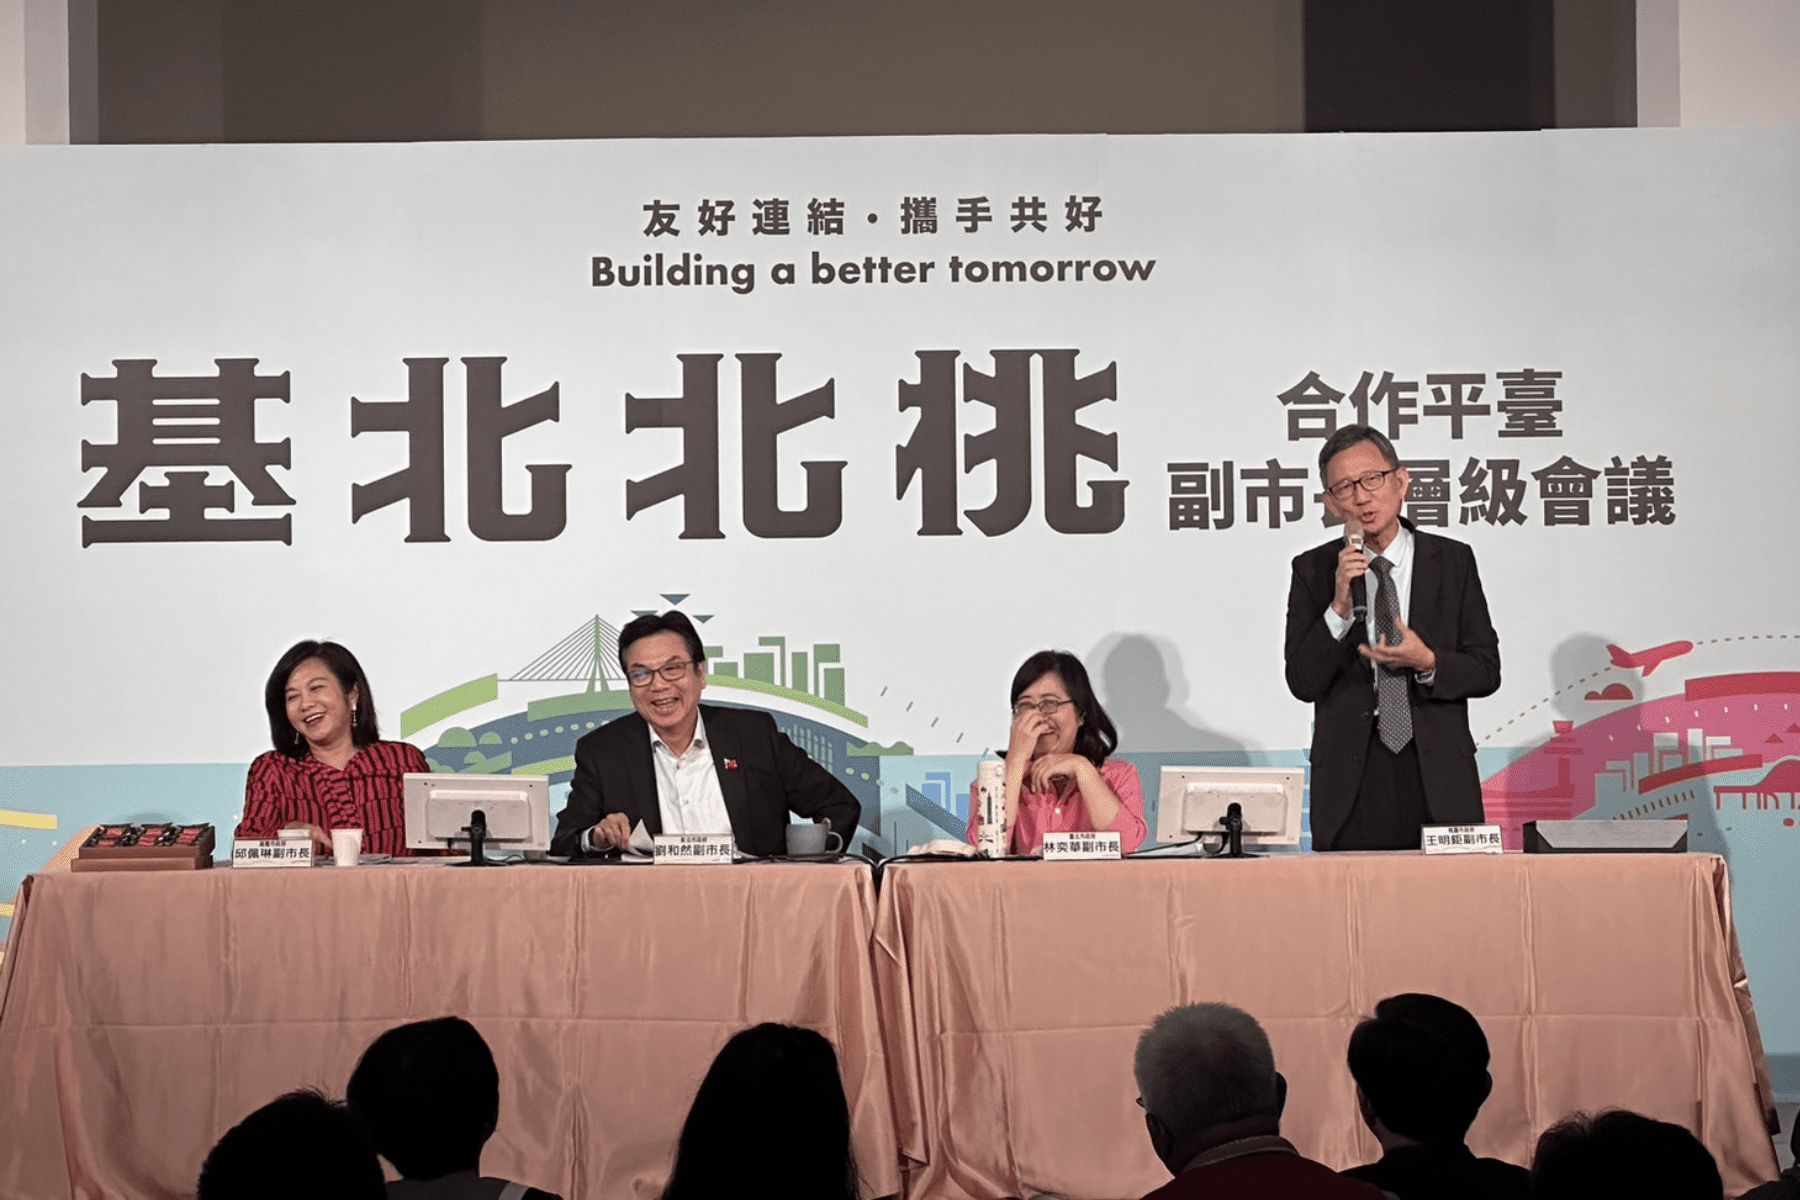 城市合作攜手迎接挑戰 桃園副市長參與基北北桃合作平台 提出氣候變遷因應方案 - 早安台灣新聞 | Morning Taiwan News